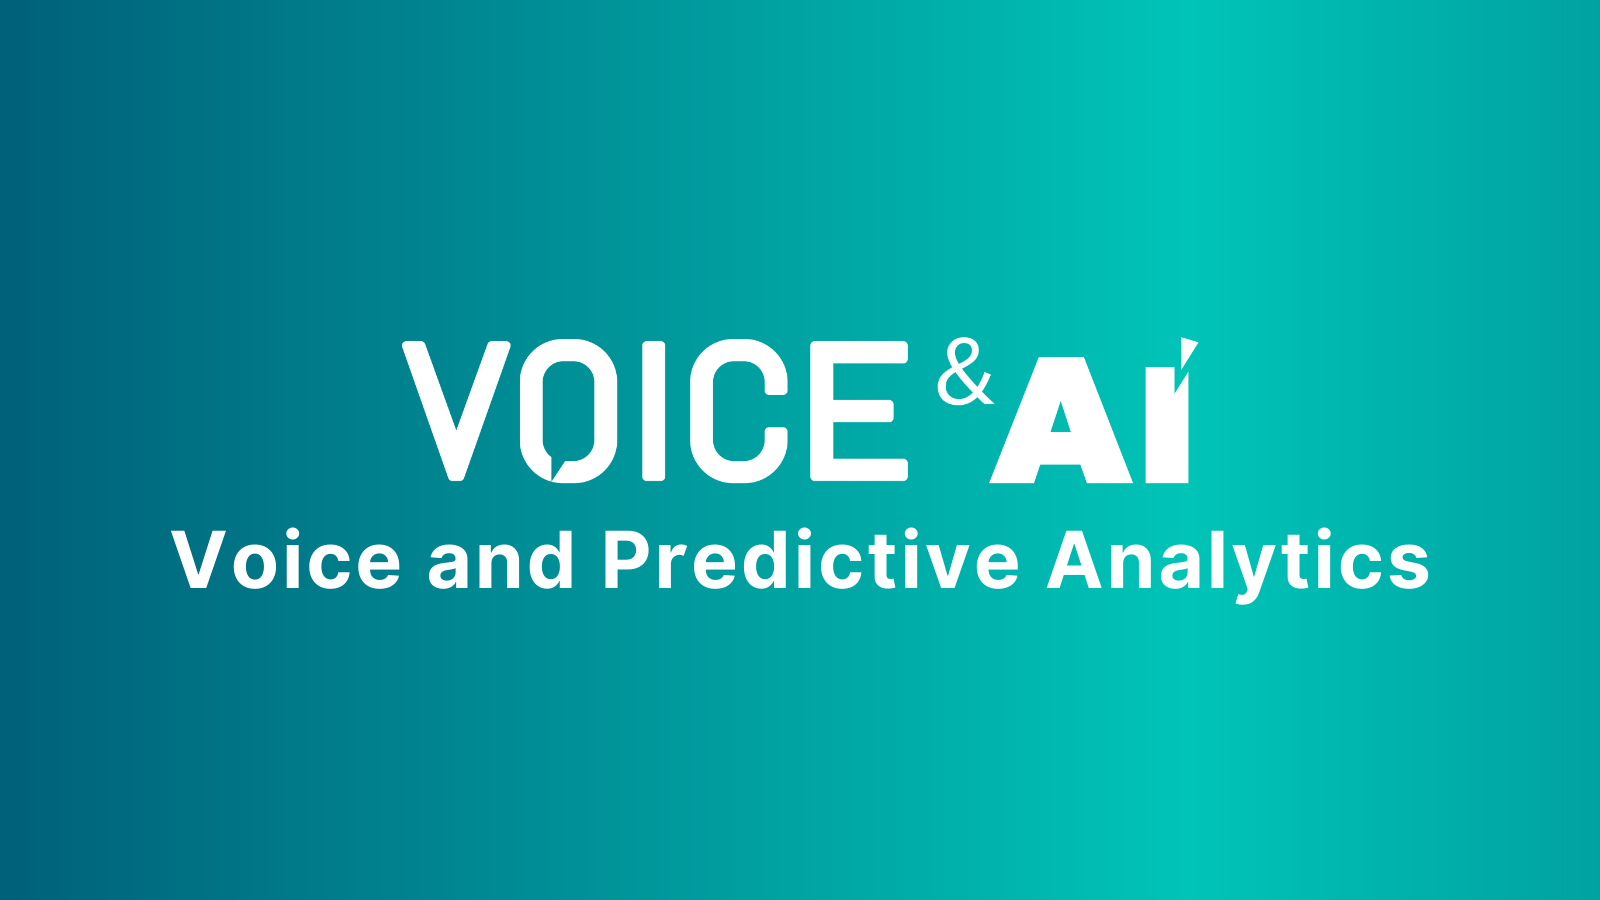 Voice and Predictive Analytics